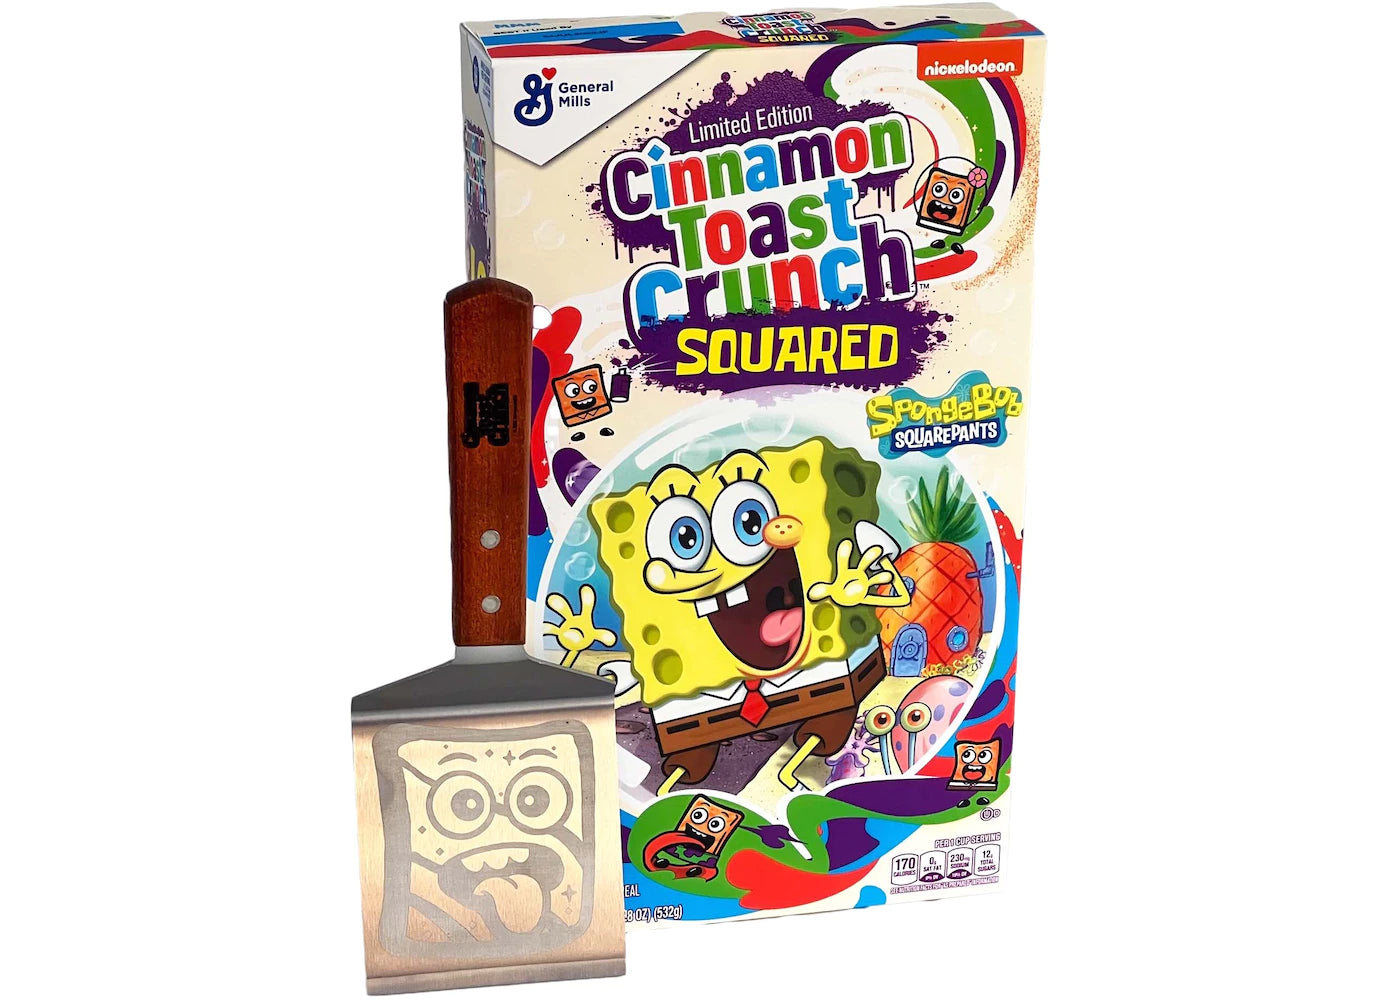 SpongeBob SquarePants Cinnamon Toast Crunch Limited Edition "da collezione" (set completo di spatola e adesivi ) chloe Kim stuff